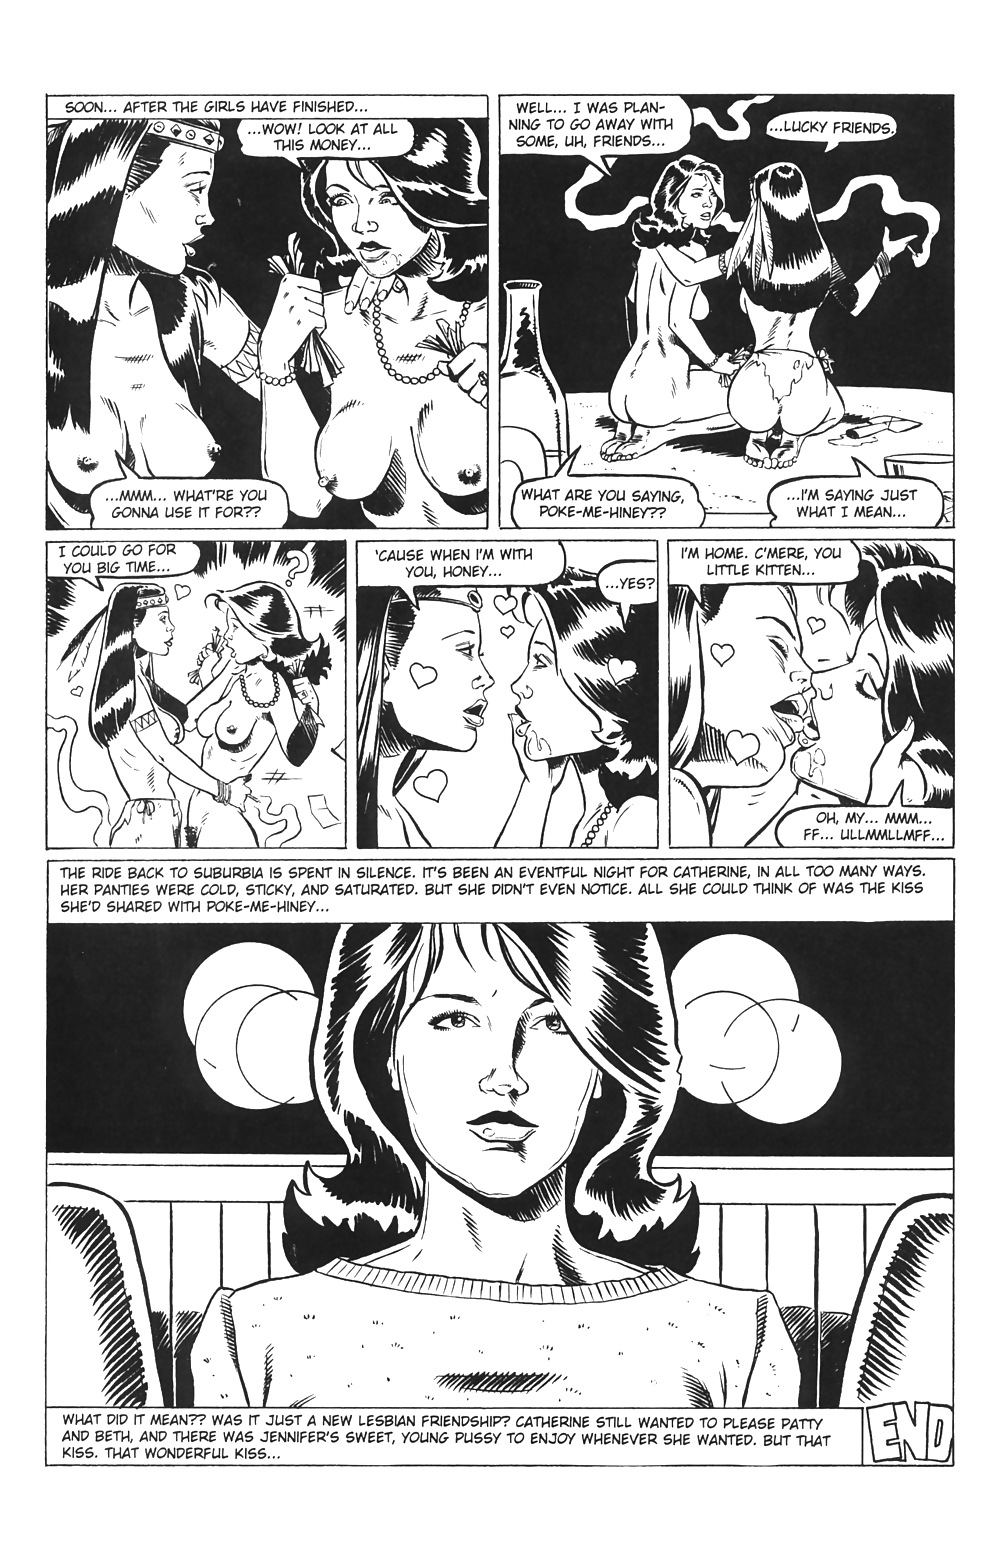 Ménagères En Jeu # 03 - Comics Eros Par Rebecca - Octobre 2001 #25714072